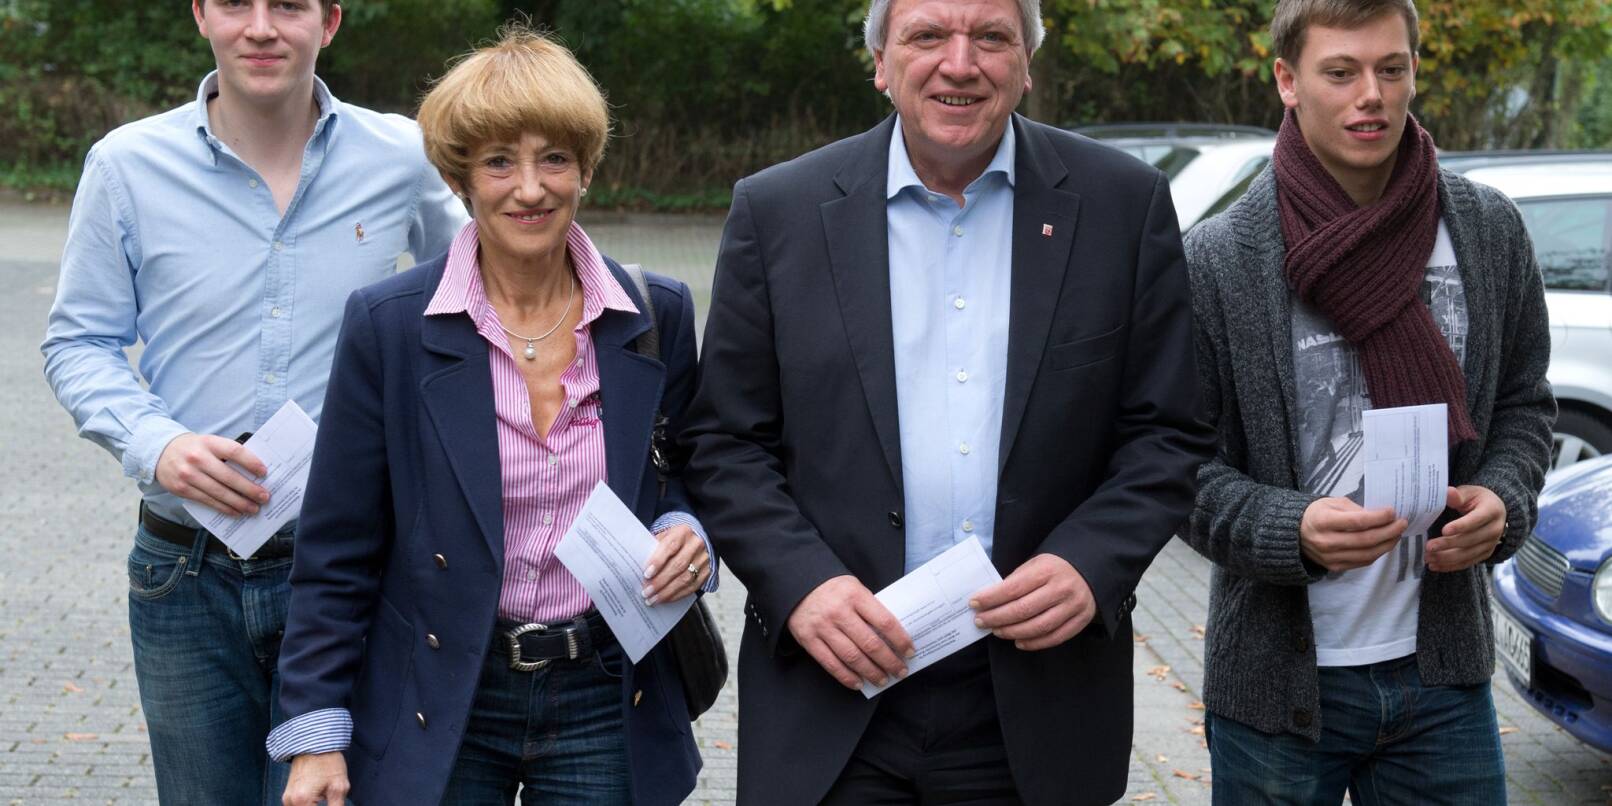 Volker Bouffier (CDU, 3vl) geht zu einem Wahllokal, um dort seine Stimme für die Landtagswahl abzugeben. Neben ihm geht seine Ehefrau Ursula, rechts Sohn Volker, links sein Sohn Frederik.